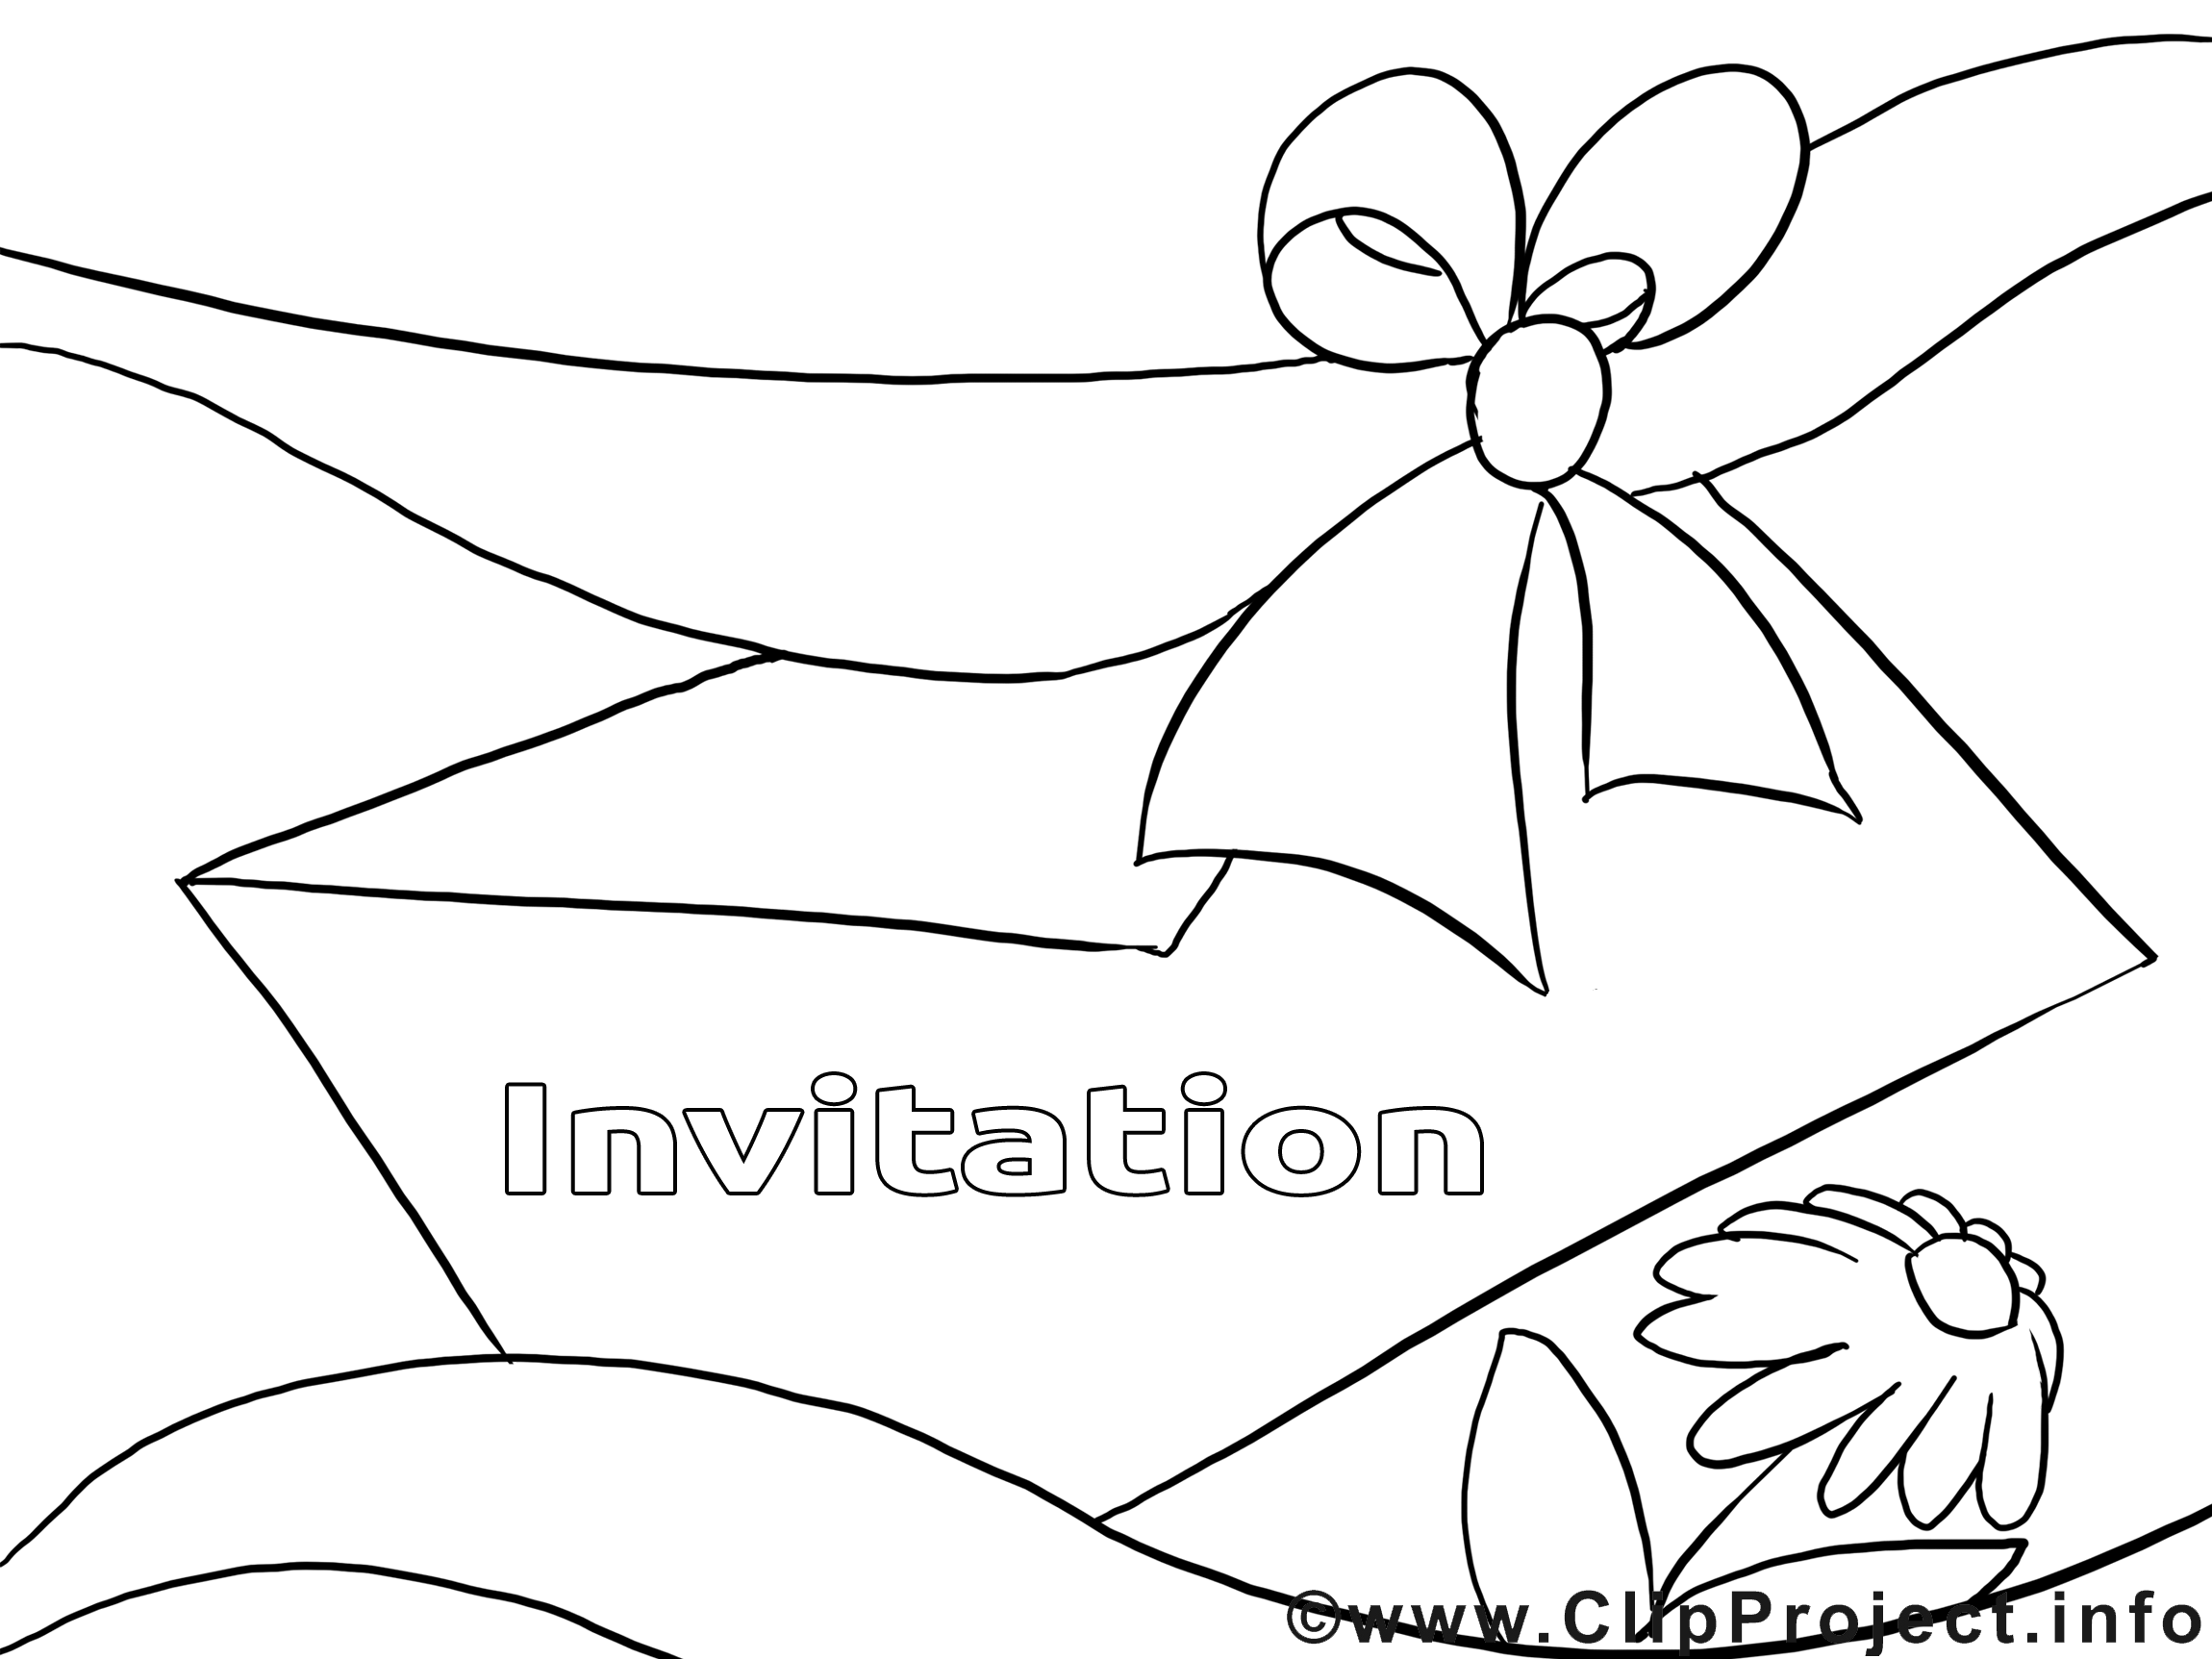 Enveloppe dessins gratuits – Invitations à colorier